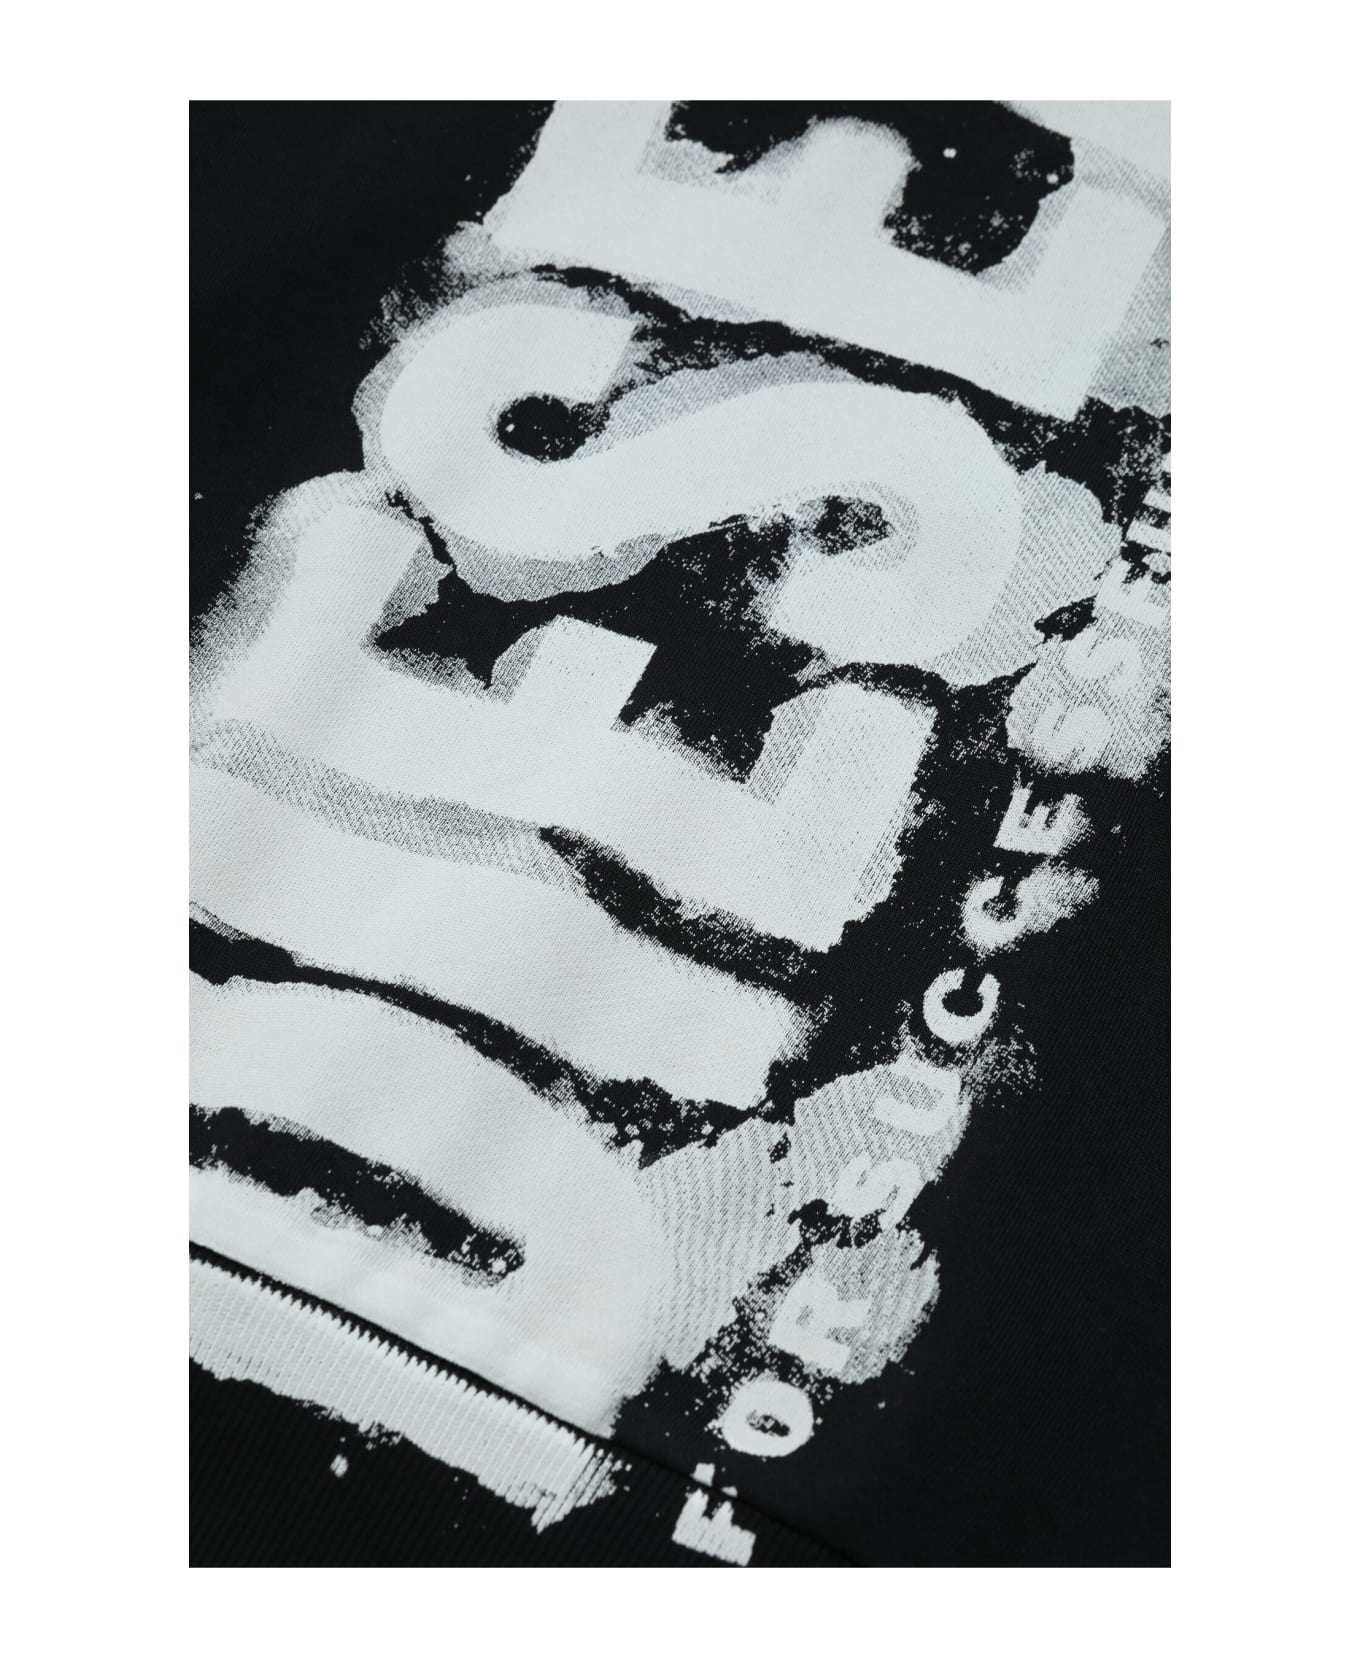 Diesel Shoodginne5 Over Sweat-shirt Diesel Black Hooded Sweatshirt With Watercolor Effect Logo - Black